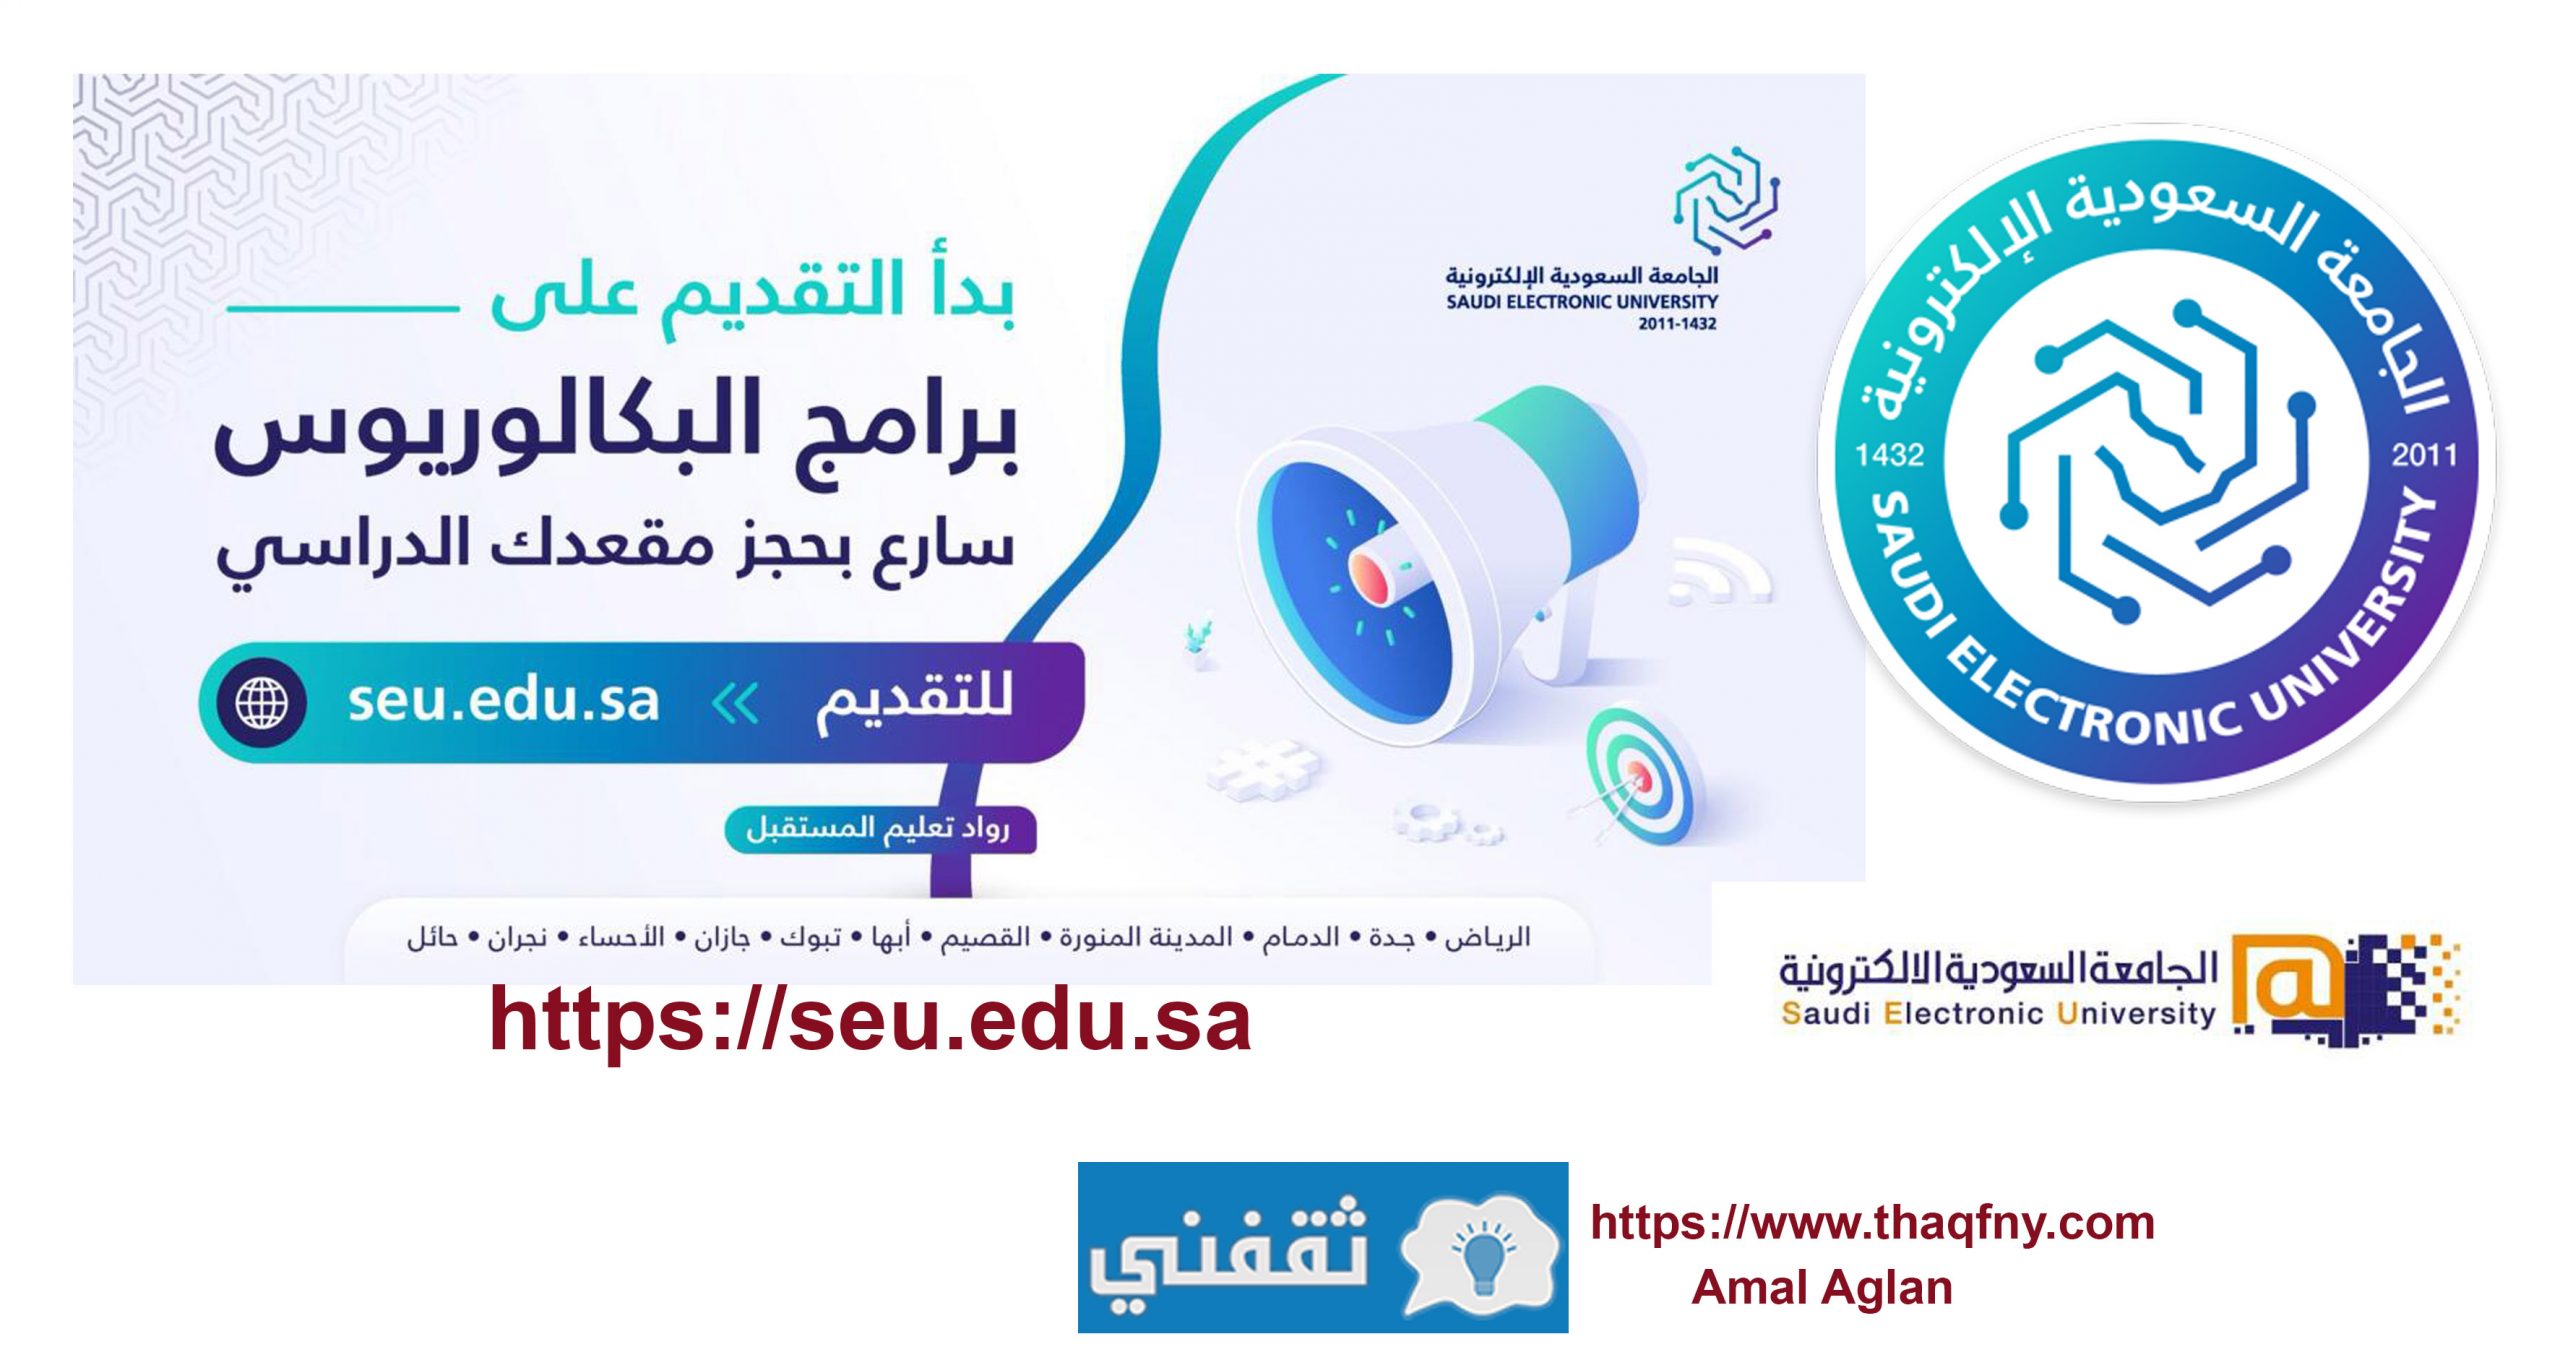 الإلكترونية في شروط السعودية القبول الجامعة طريقة التسجيل